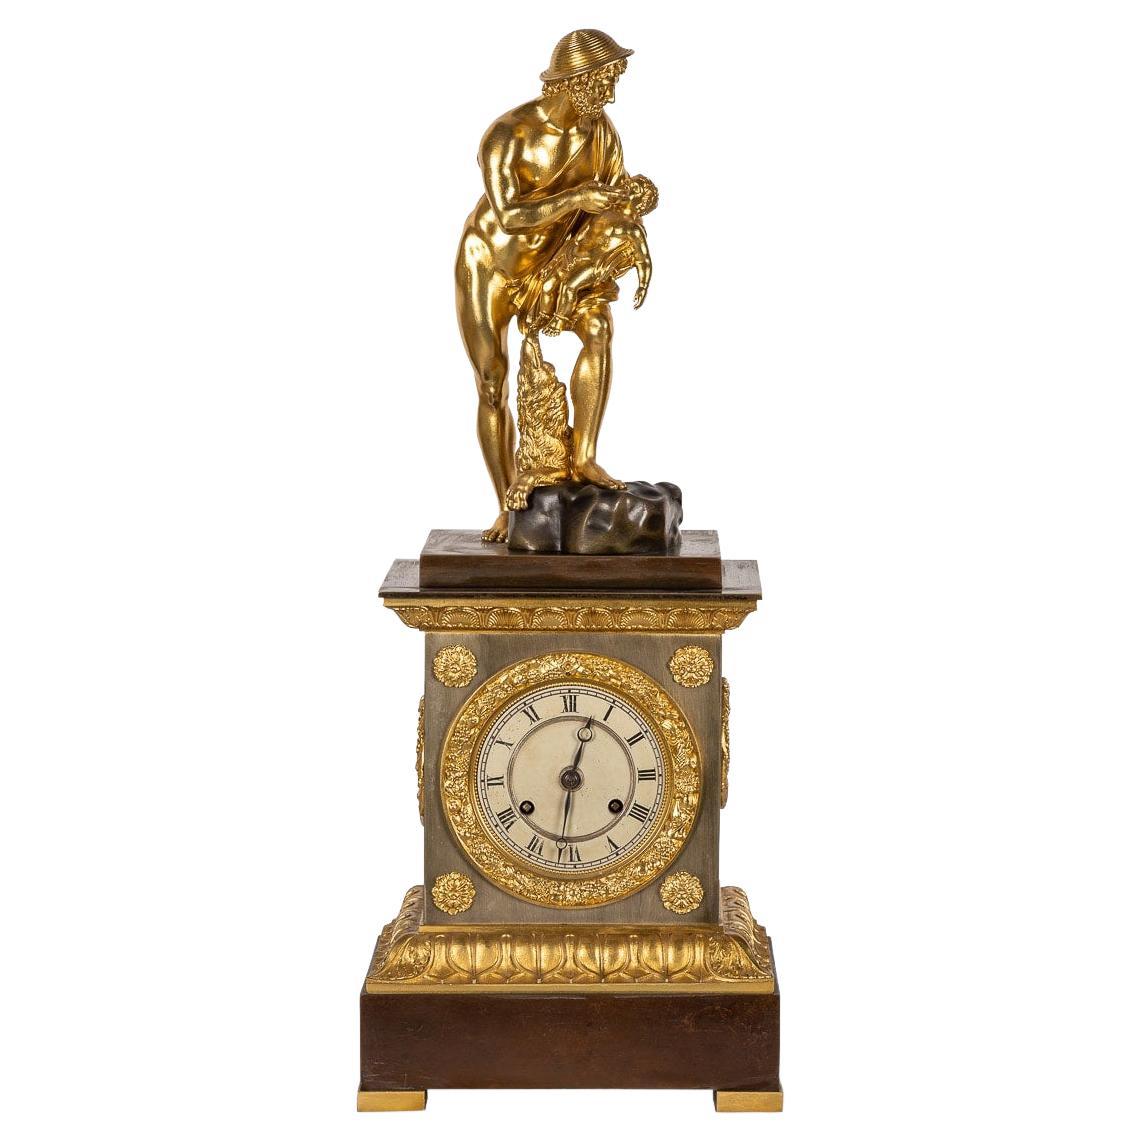 Horloge de cheminée en bronze de style Empire français du XIXe siècle, vers 1870